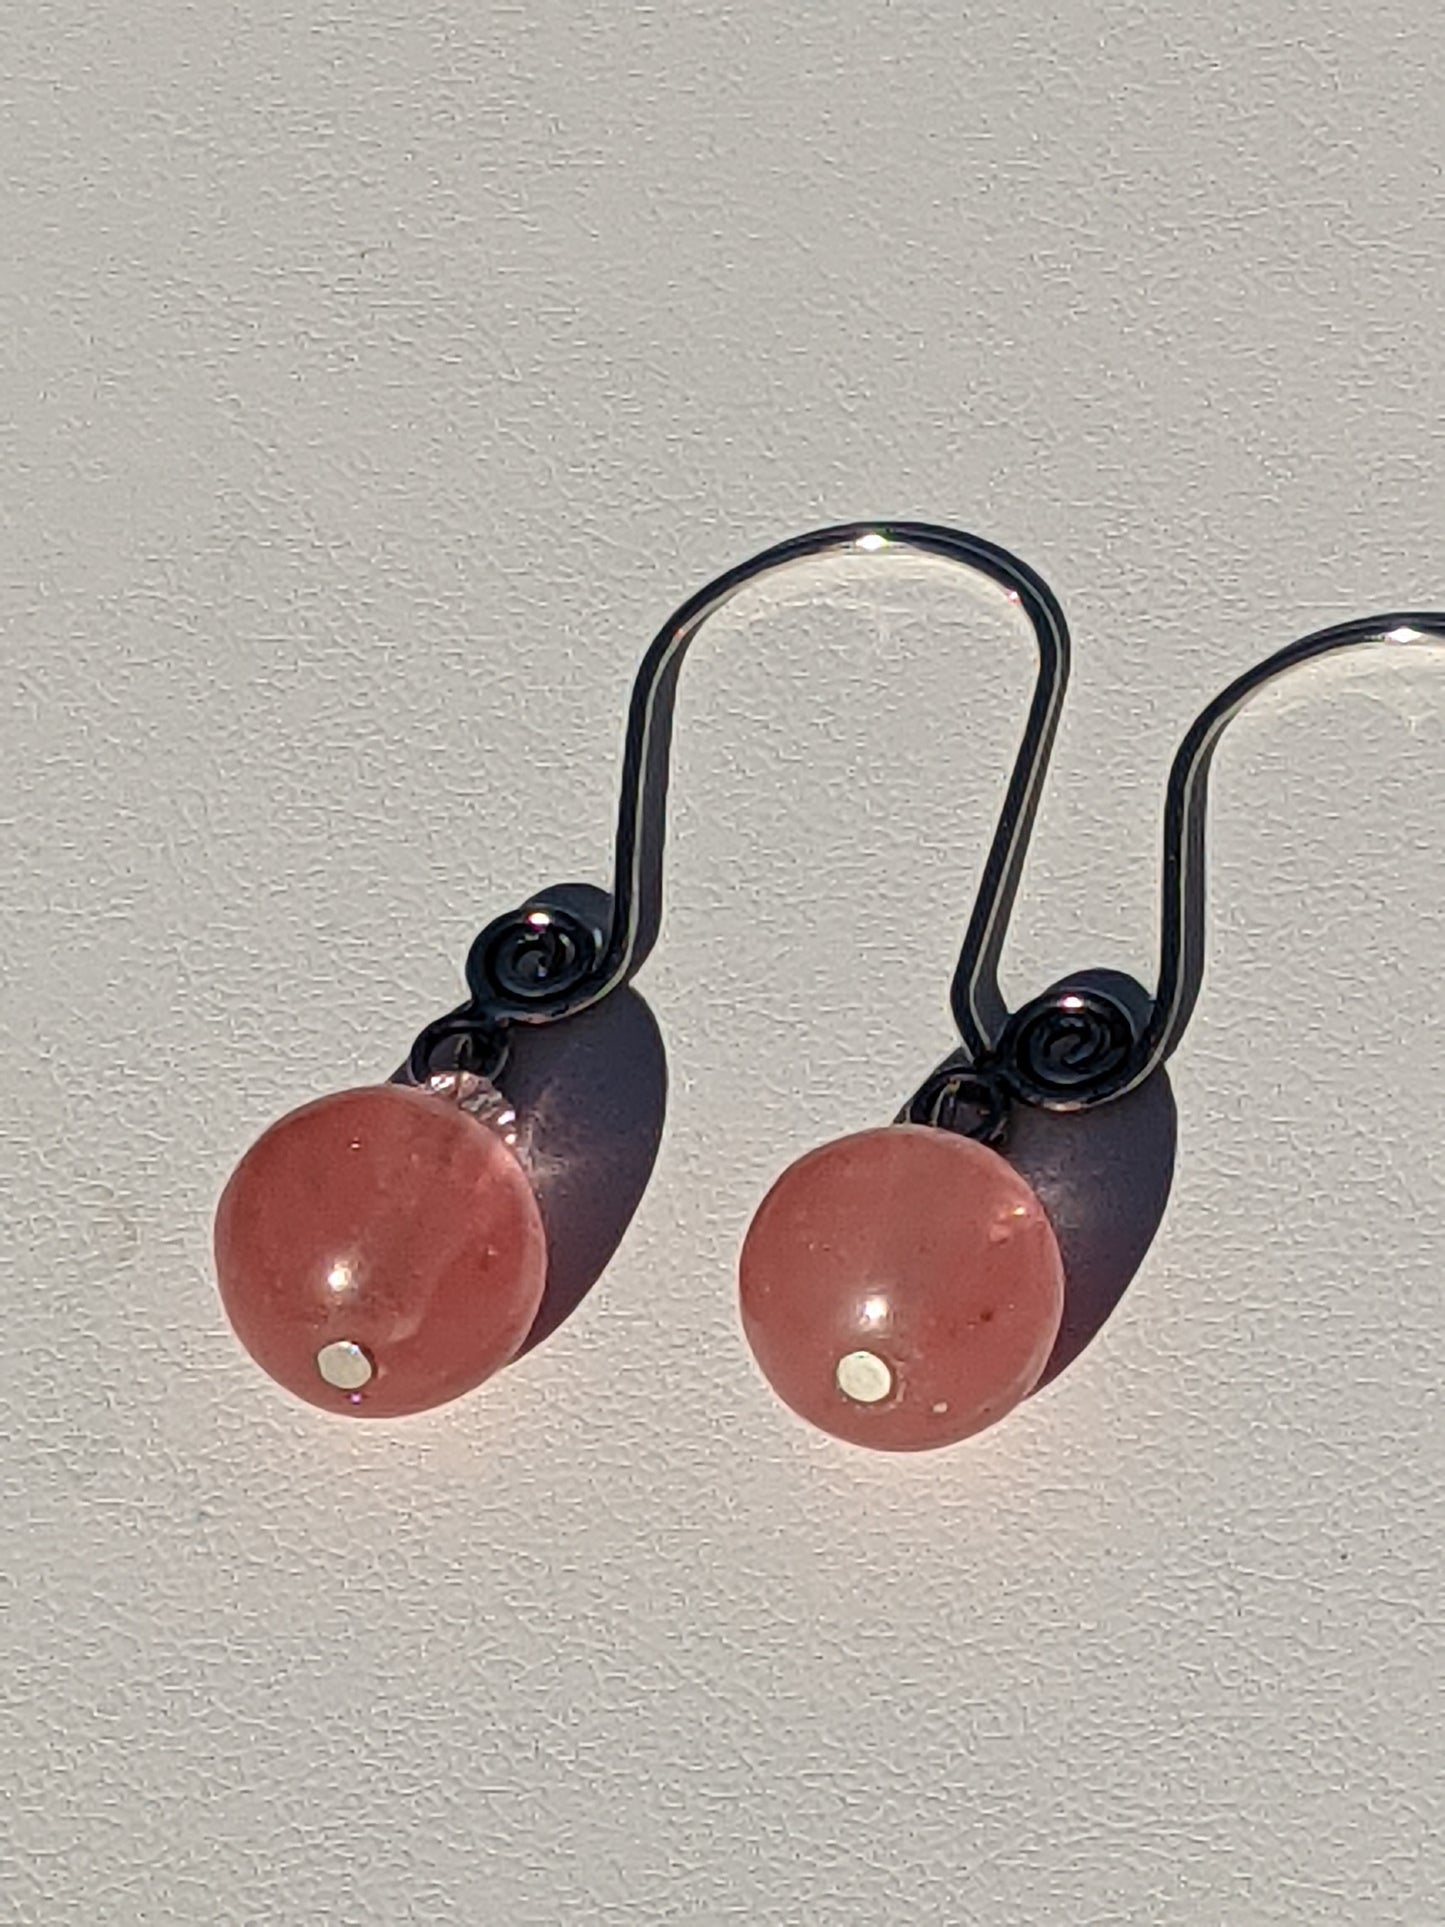 Strawberry Quartz Earrings on Shephard's Hook